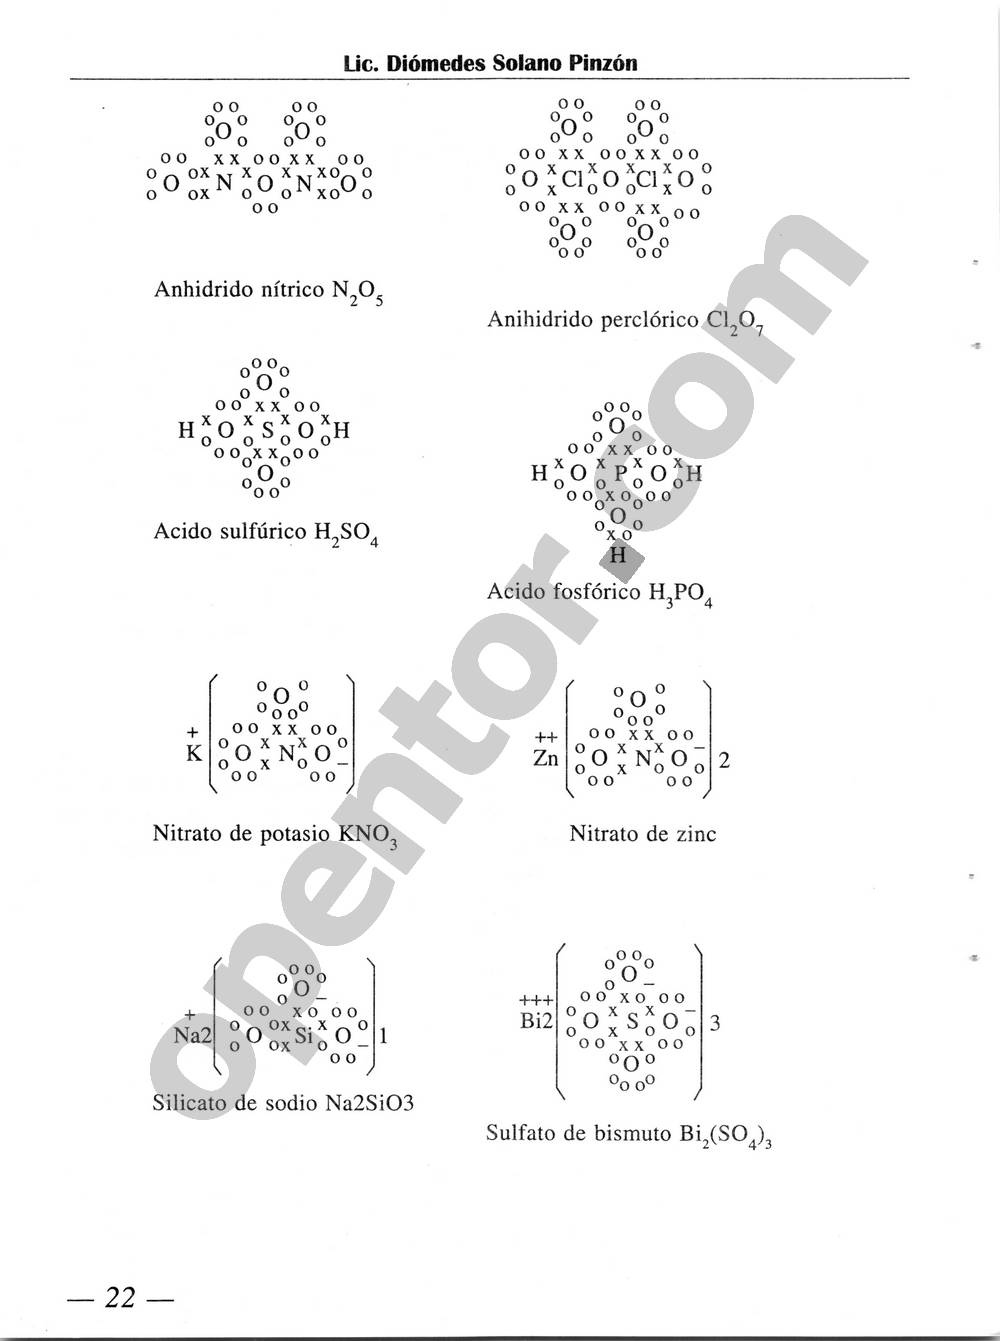 Química Simplificada de Diómedes Solano - Página 22